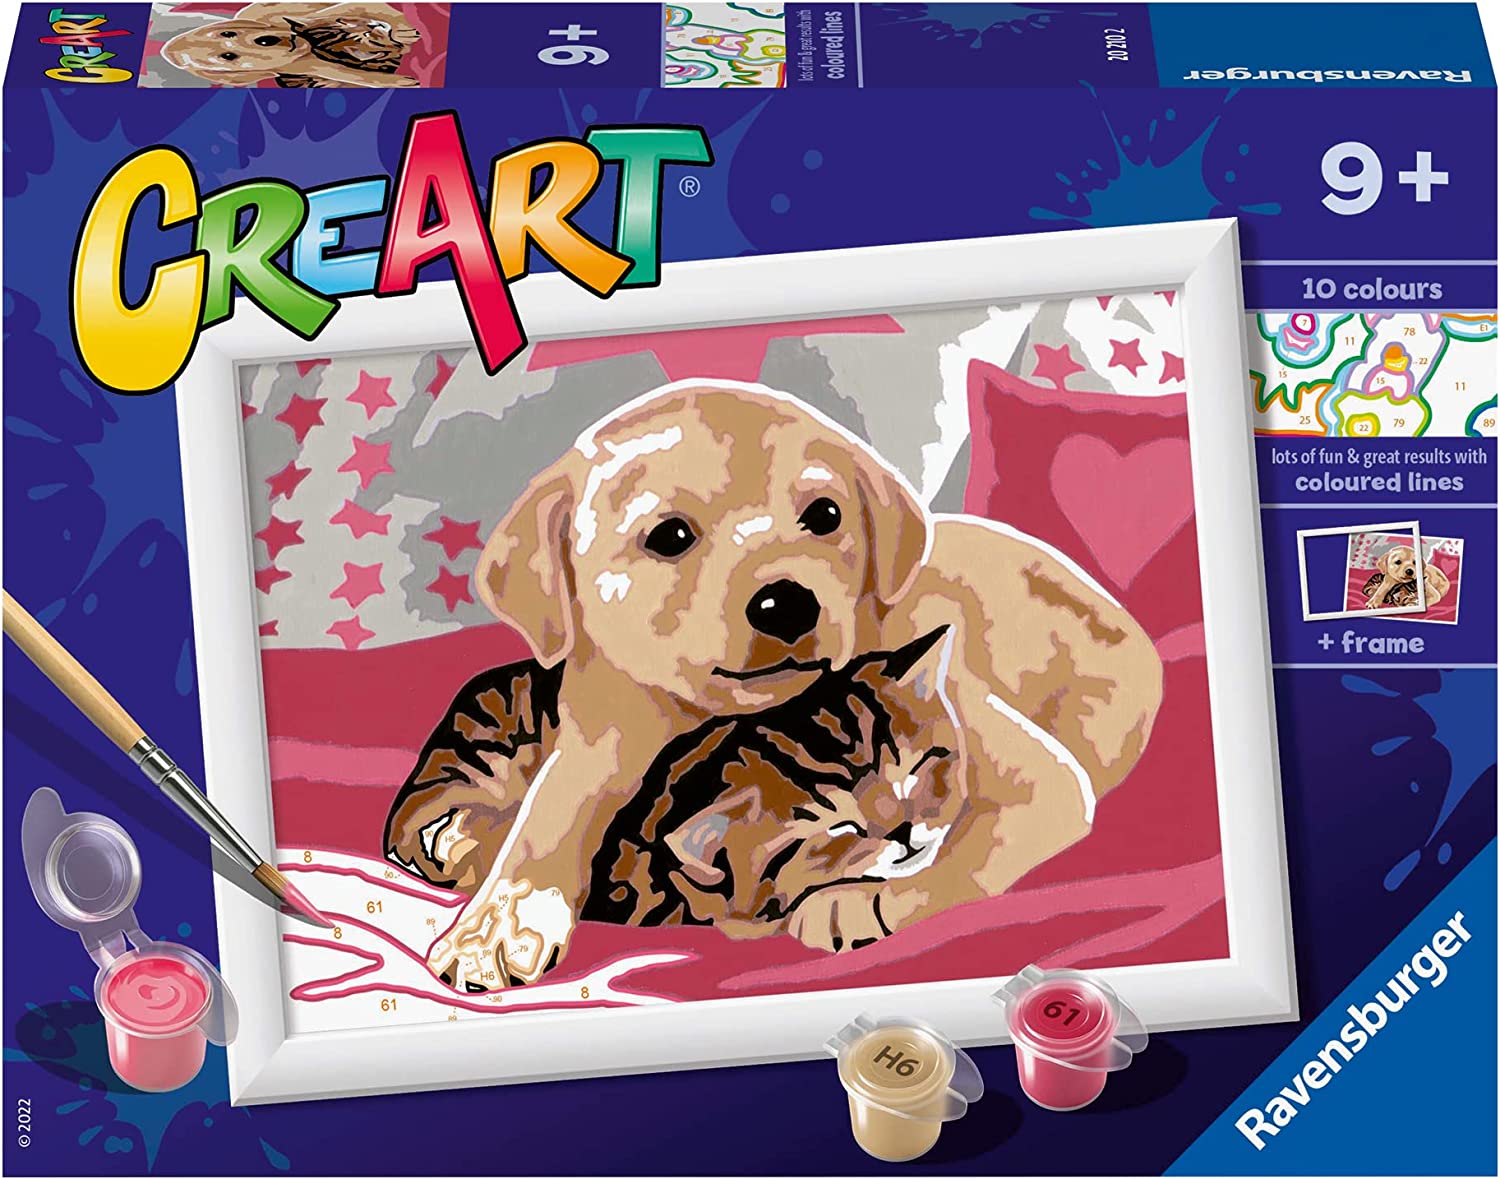 20210 Ravensburger - CreArt Serie E: Cane e gatto sulla coperta, Kit per  Dipingere con i Numeri, Contiene una Tavola Prestampata, Pennello, Colori e  Accessori, Gioco Creativo per Bambini, Età 9+ – Full Toys